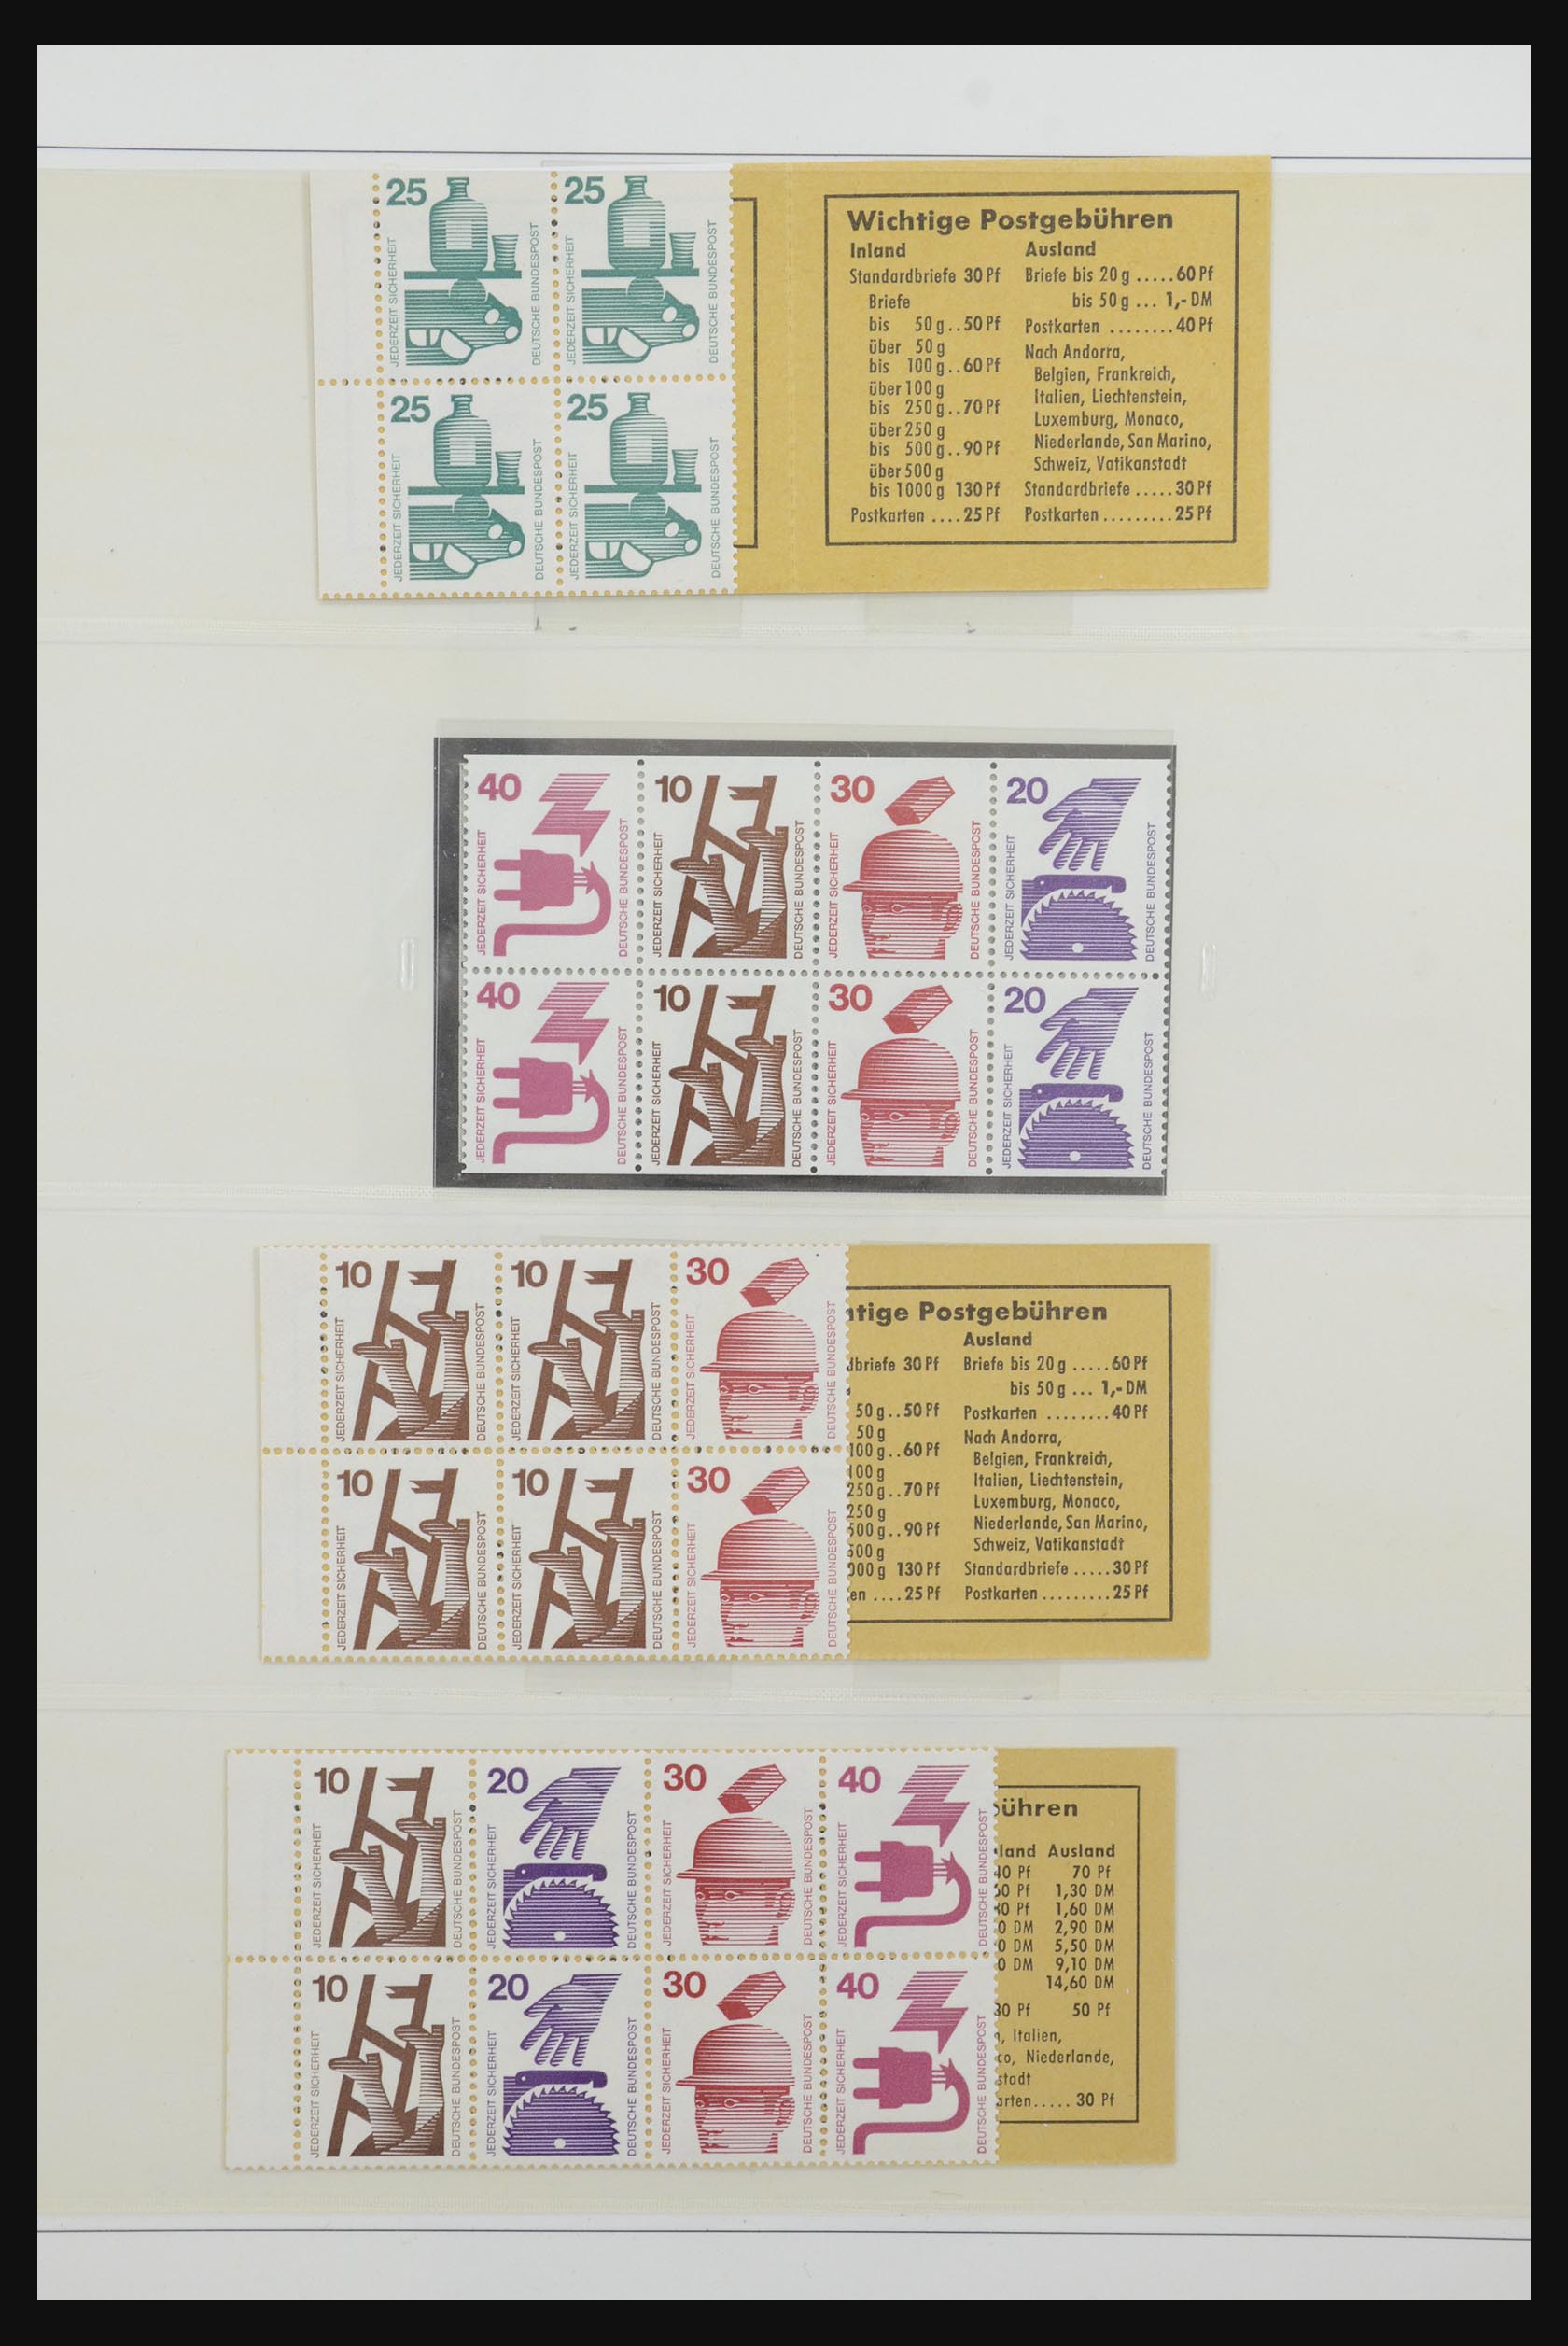 31842 053 - 31842 Bundespost combinations 1951-2003.